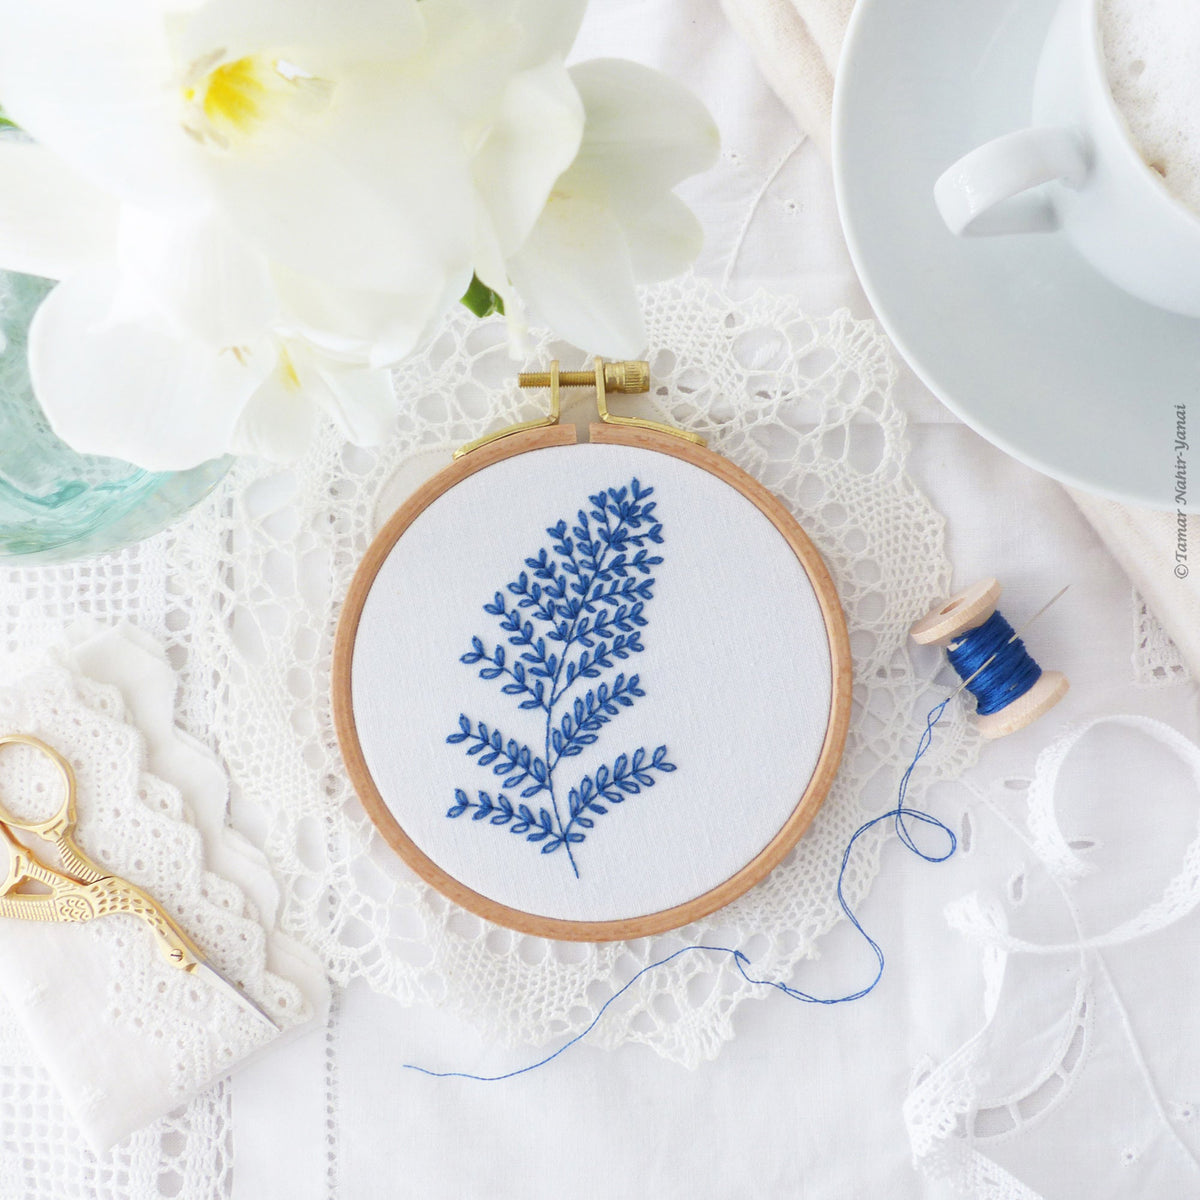 Blue Leaves Mini Hoop Hand Embroidery Kit